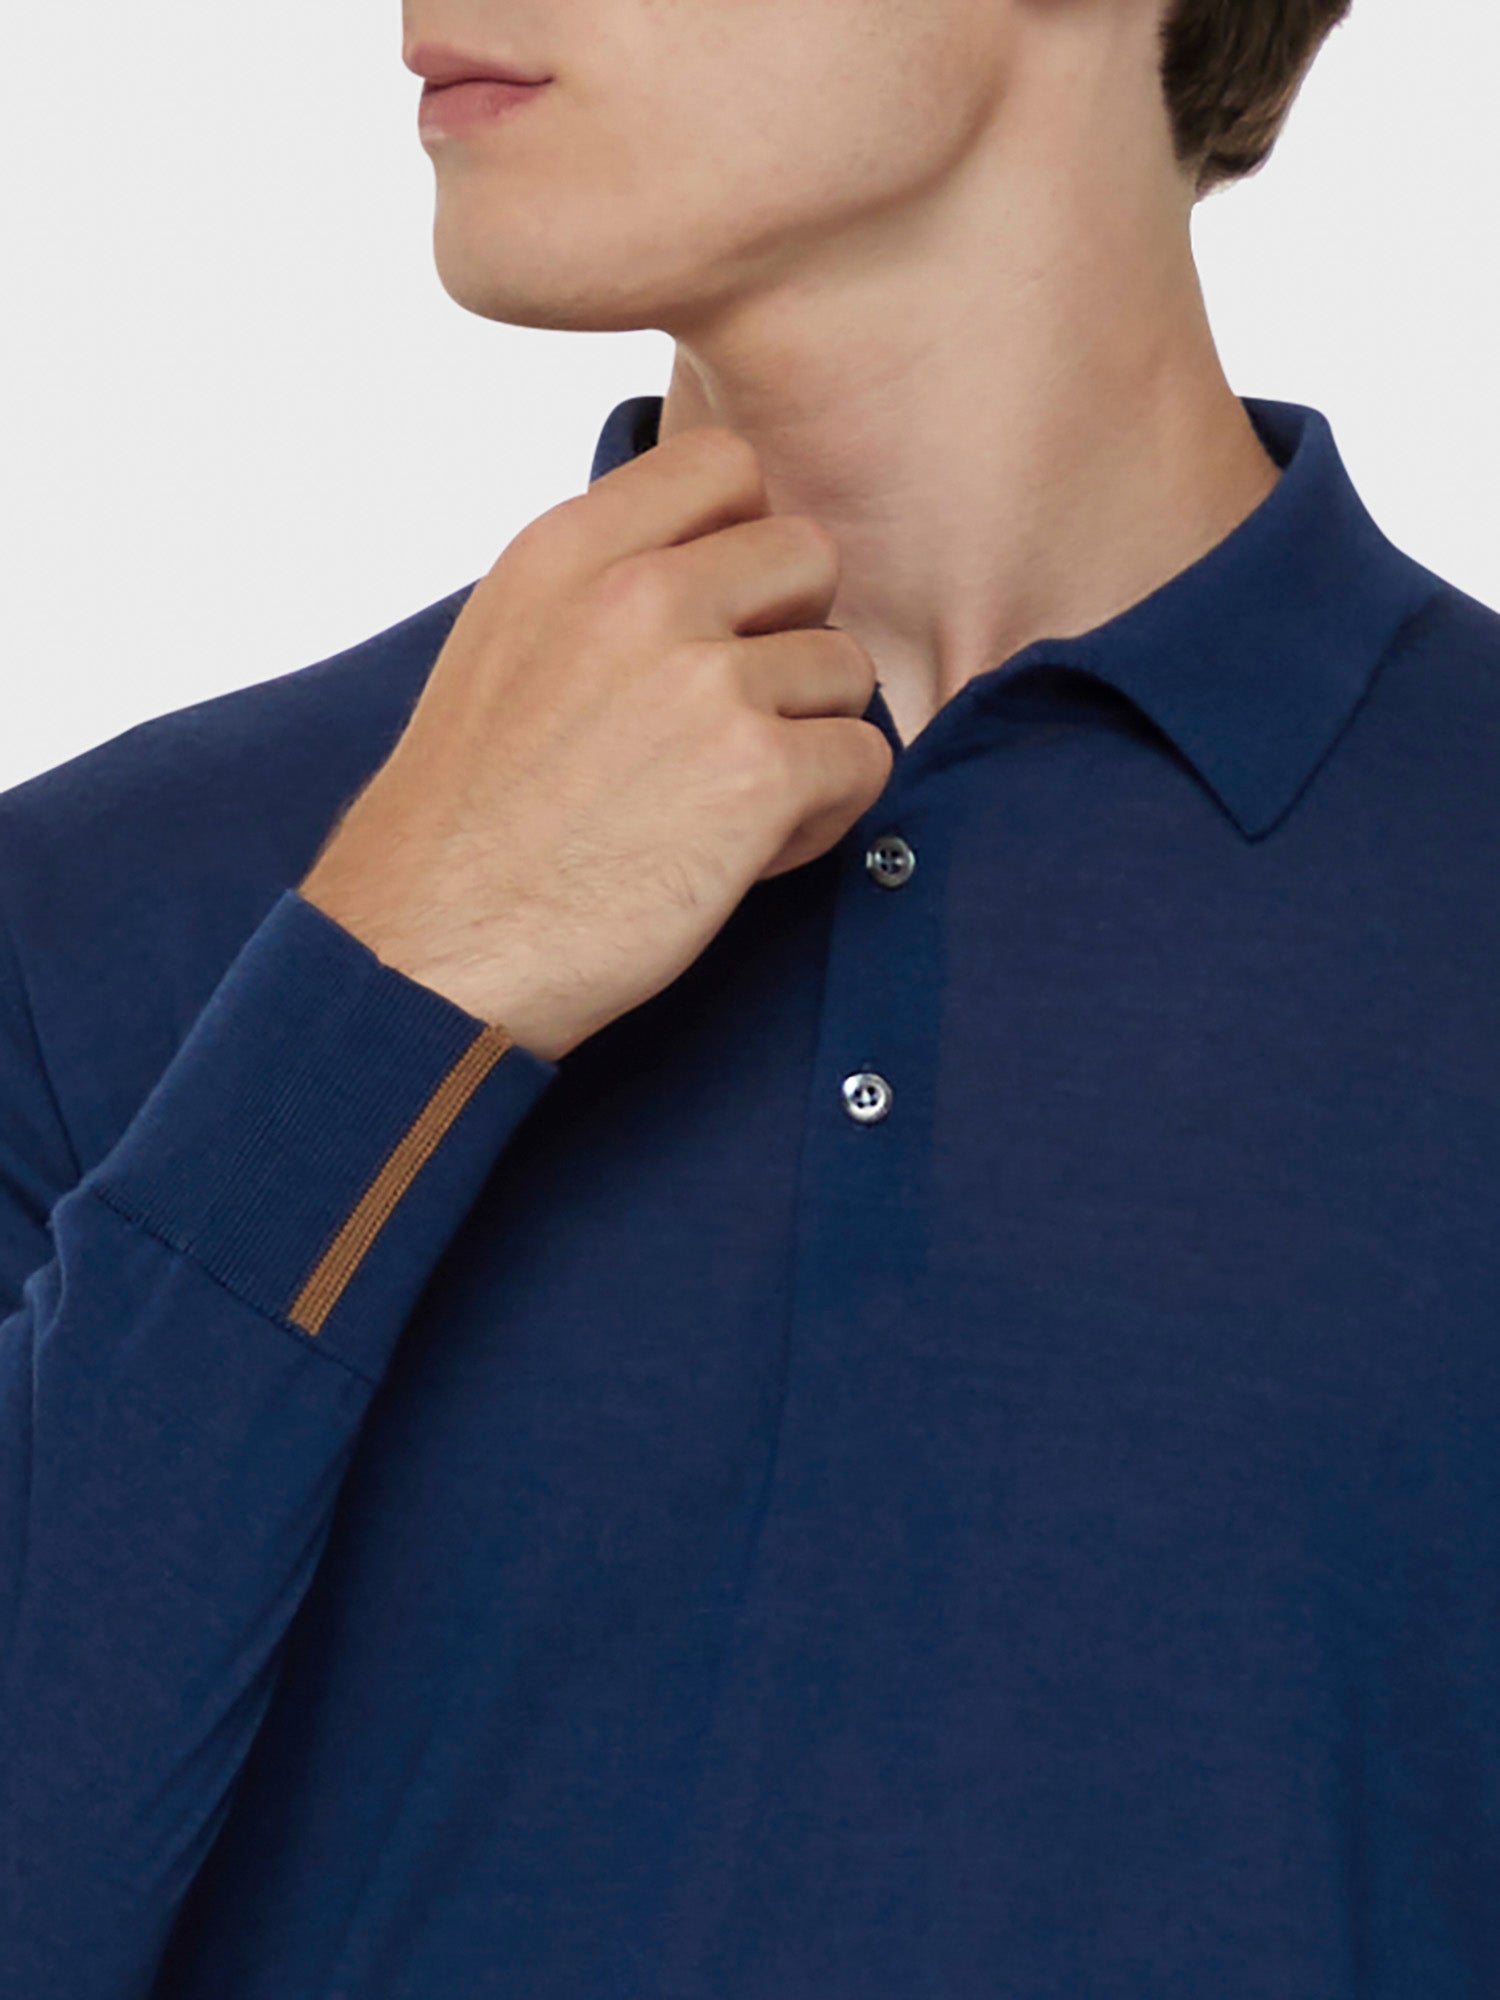 Caruso Menswear Abbigliamento Uomo Polo a maniche lunghe in lana, seta e cashmere blu dettaglio